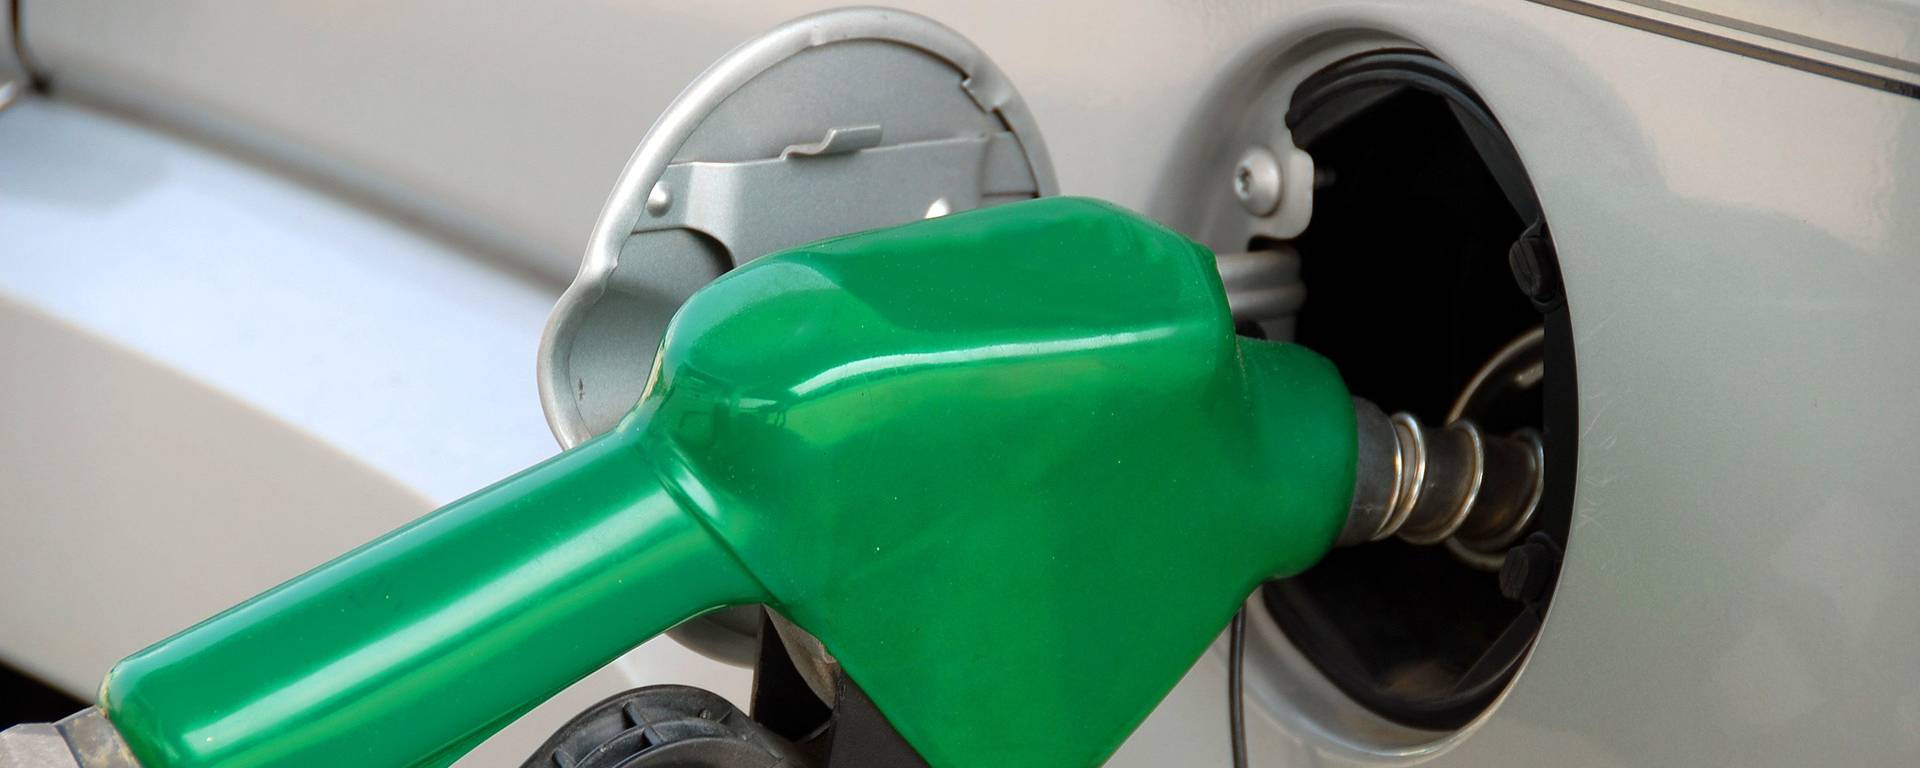 Cartes des stations-essence et prix des carburants